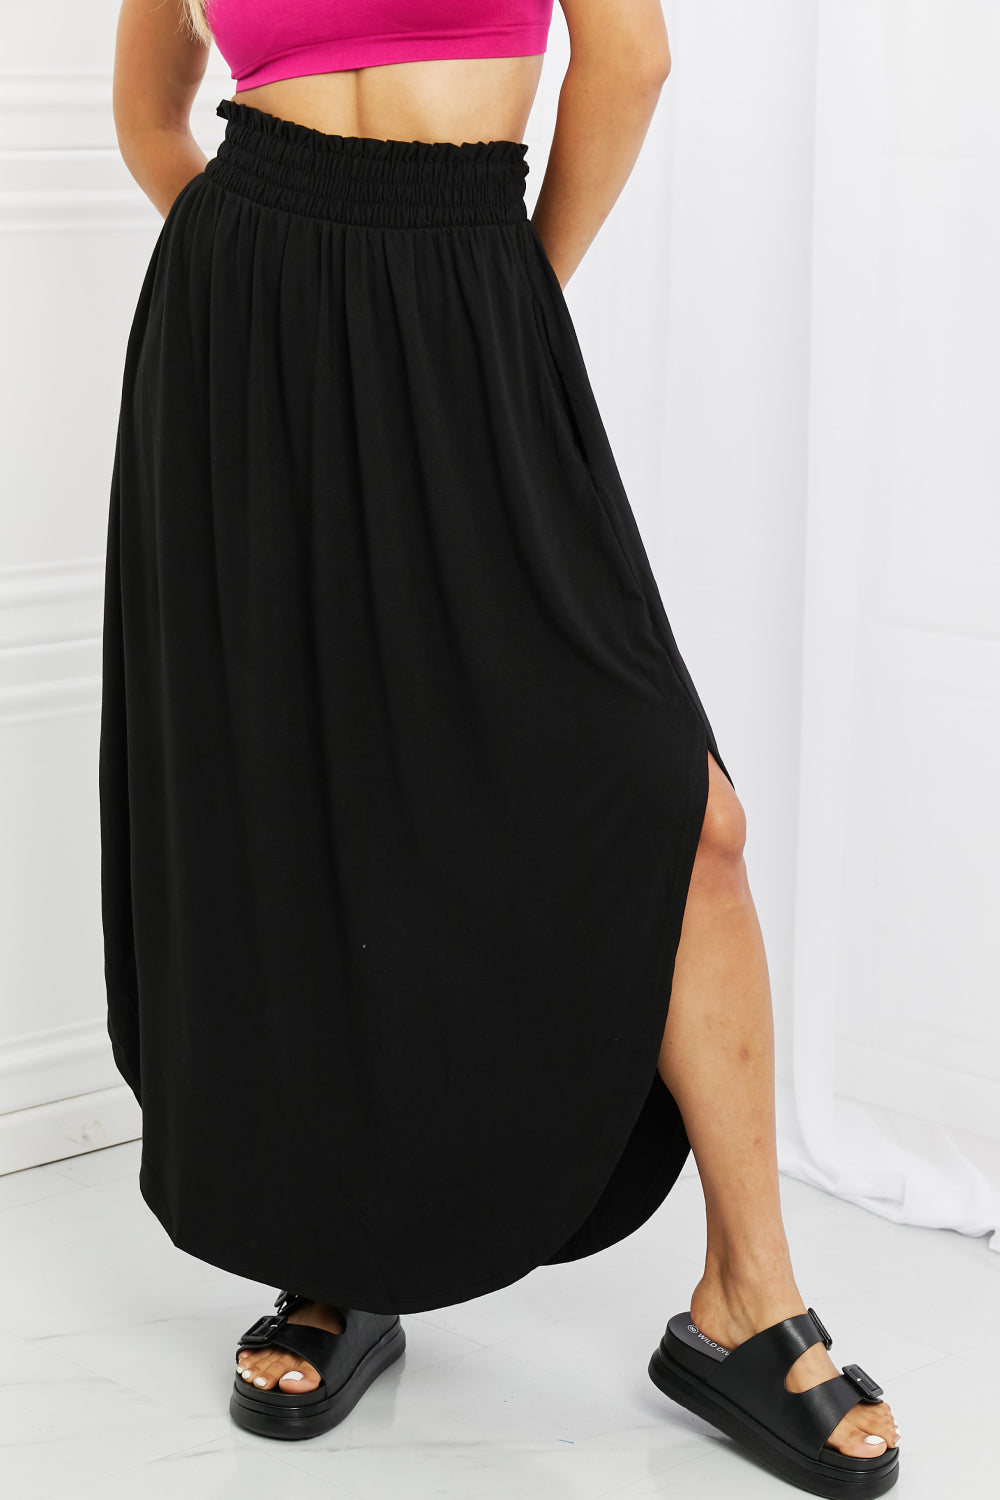 Zenana It&#39;s My Time Side Scoop Scrunch Skirt in Black - Online Only